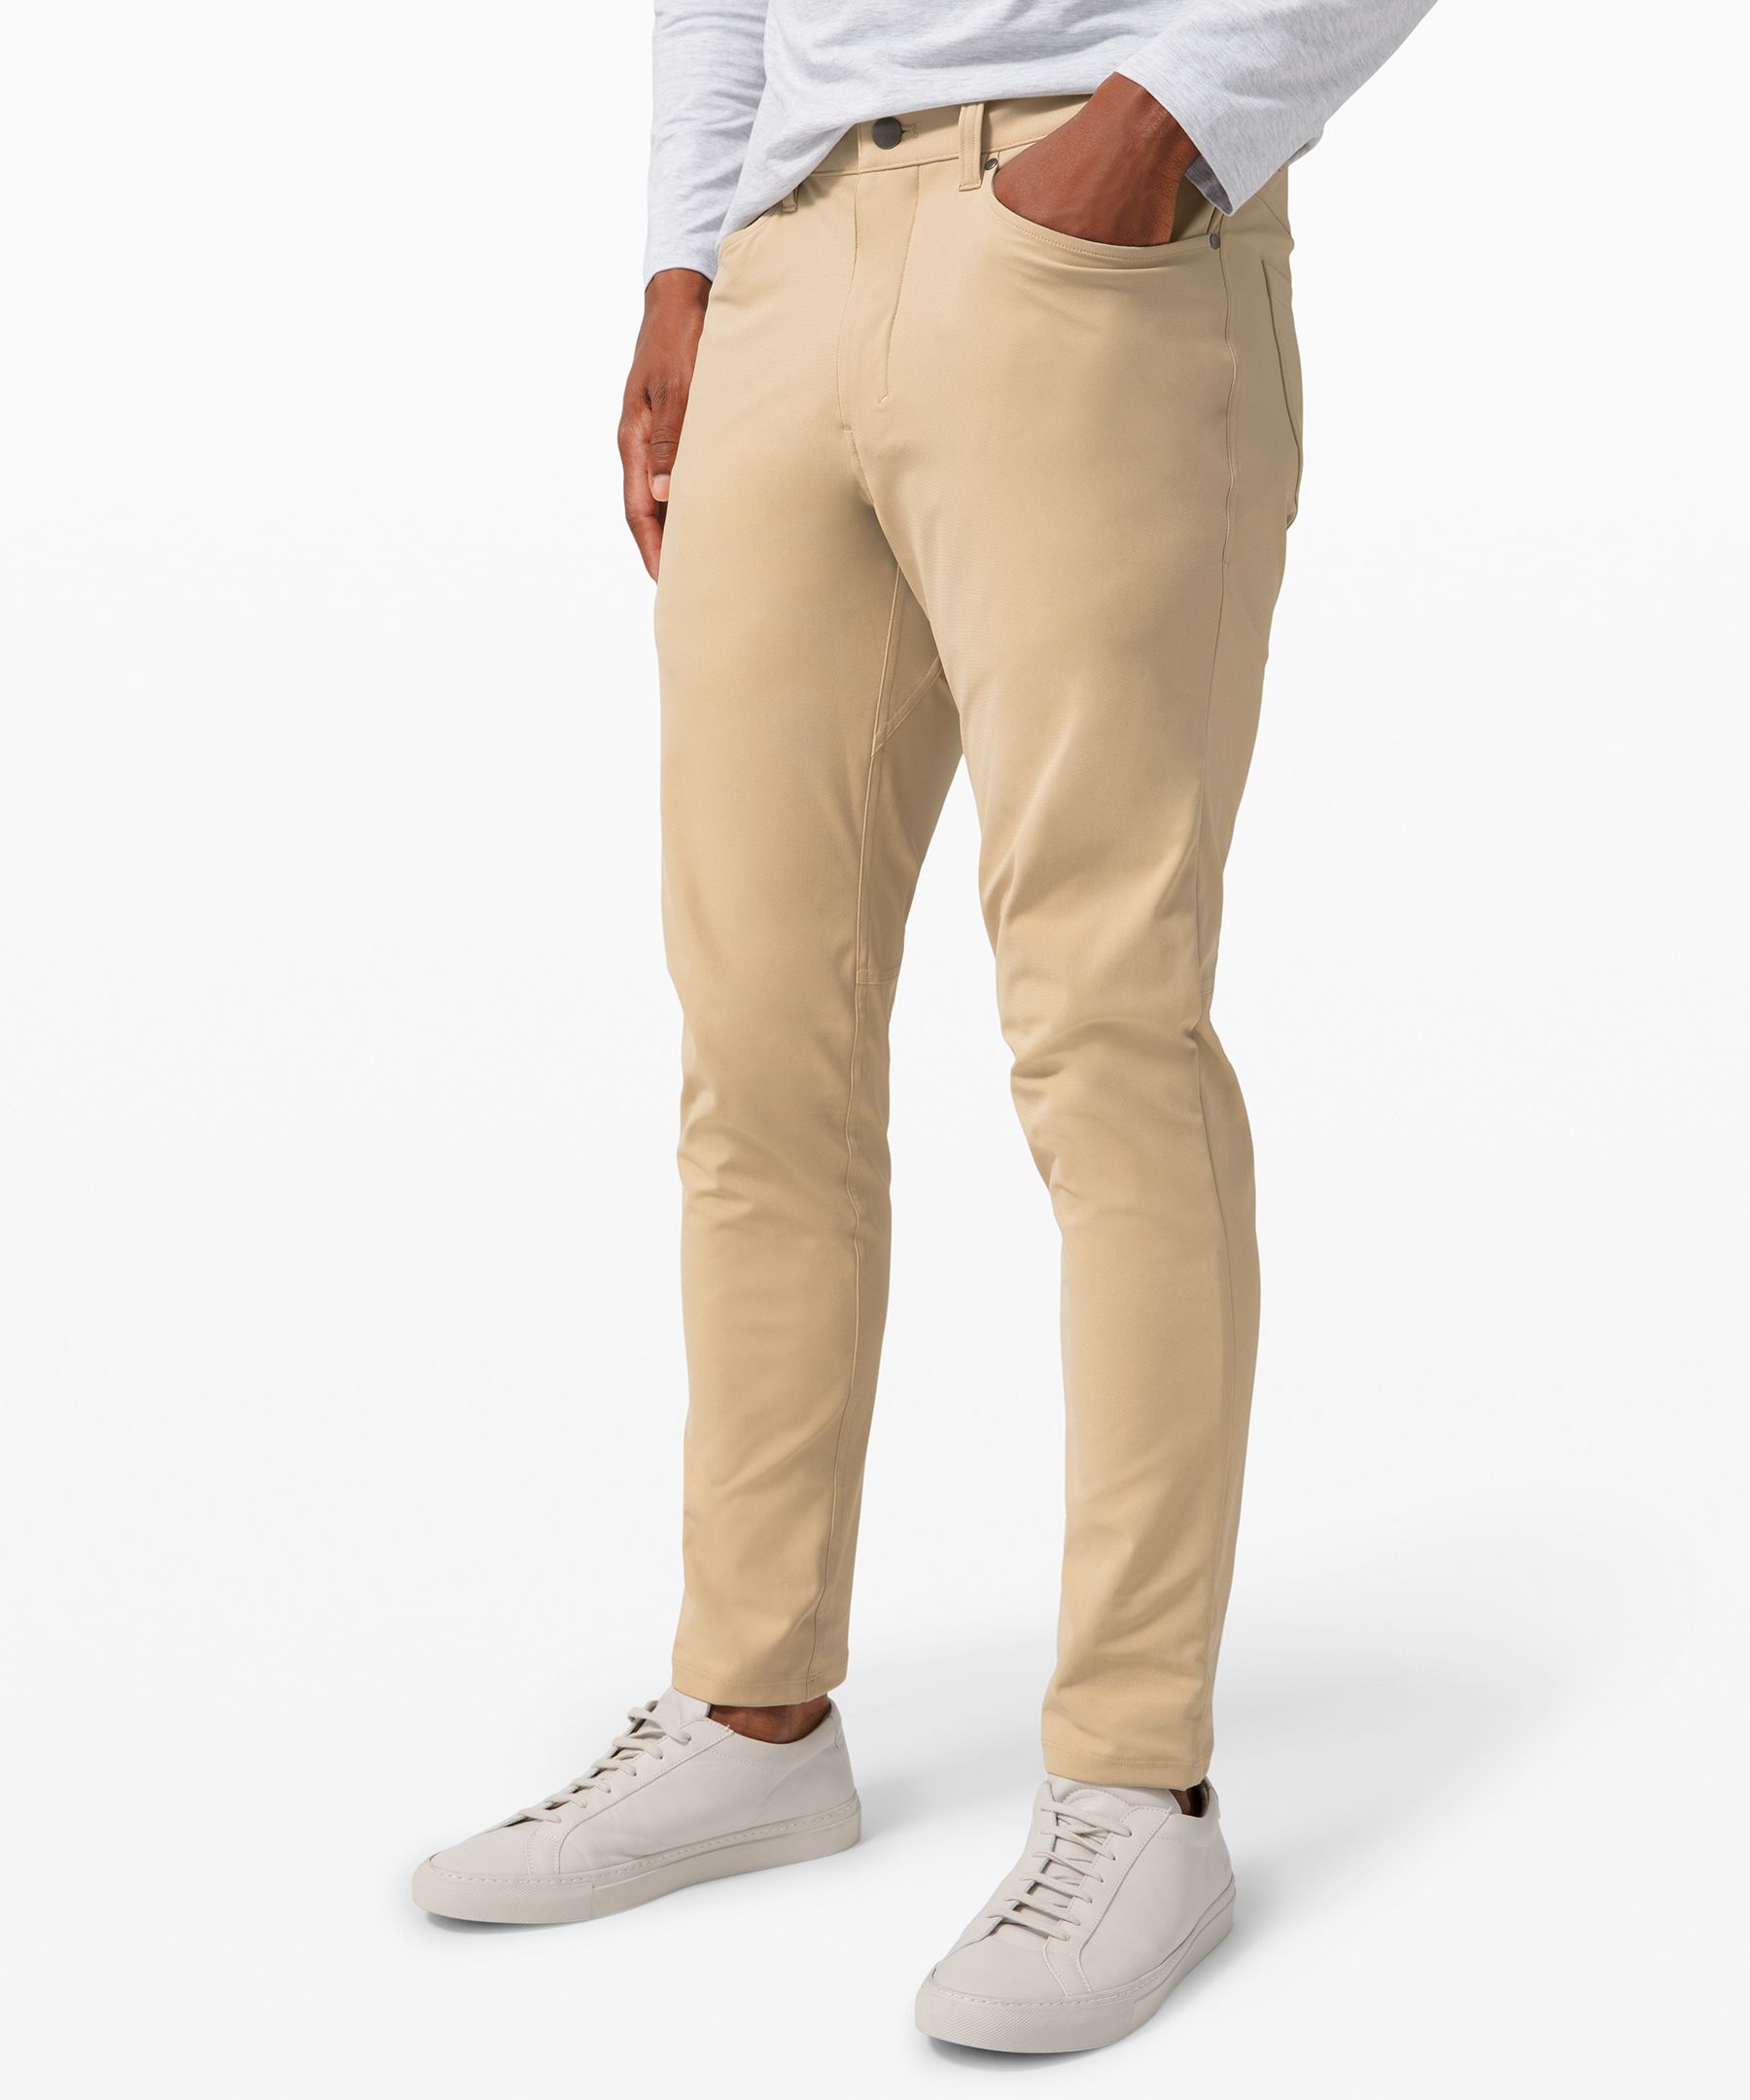 Lululemon Abc Slim-fit 5 Pocket Pants 37